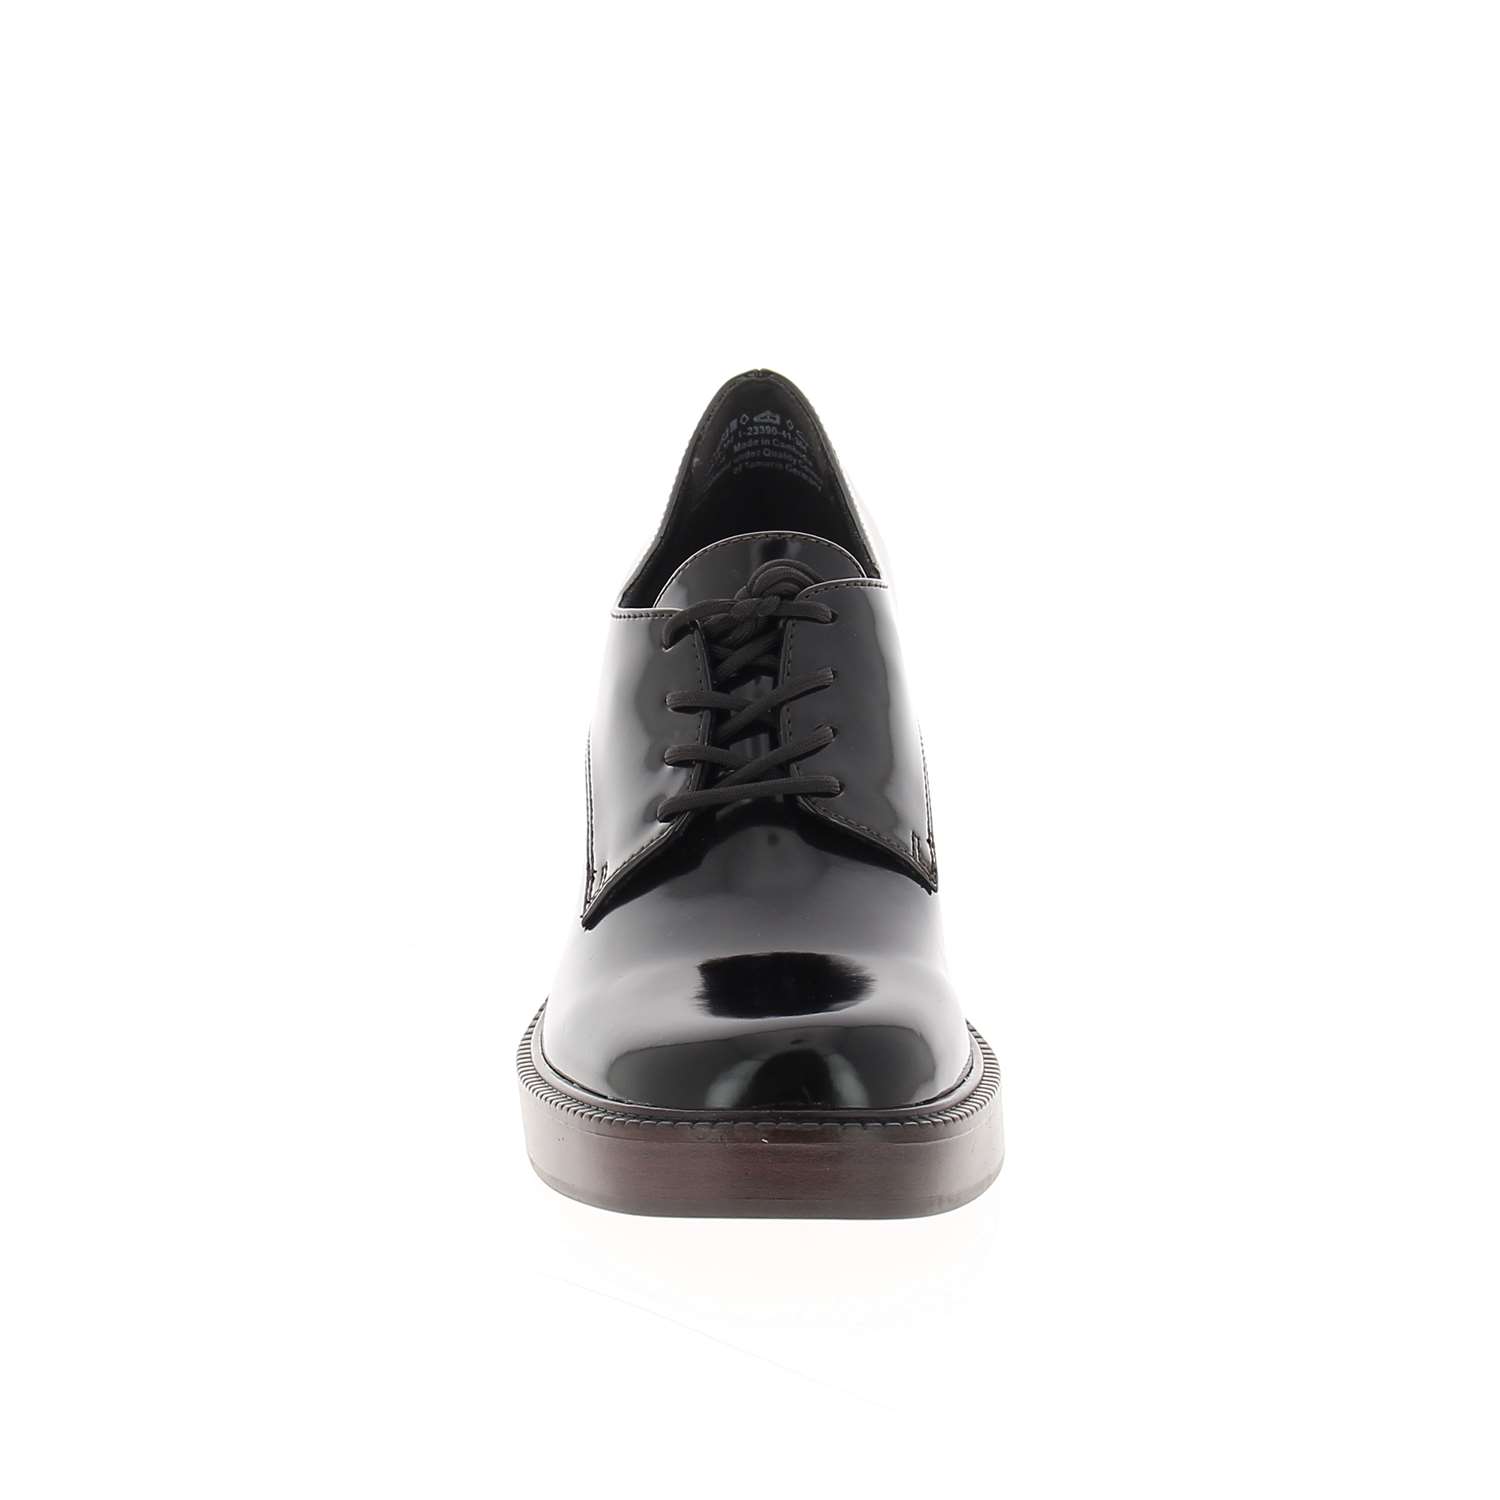 03 - TABISE - TAMARIS - Chaussures à lacets - Synthétique